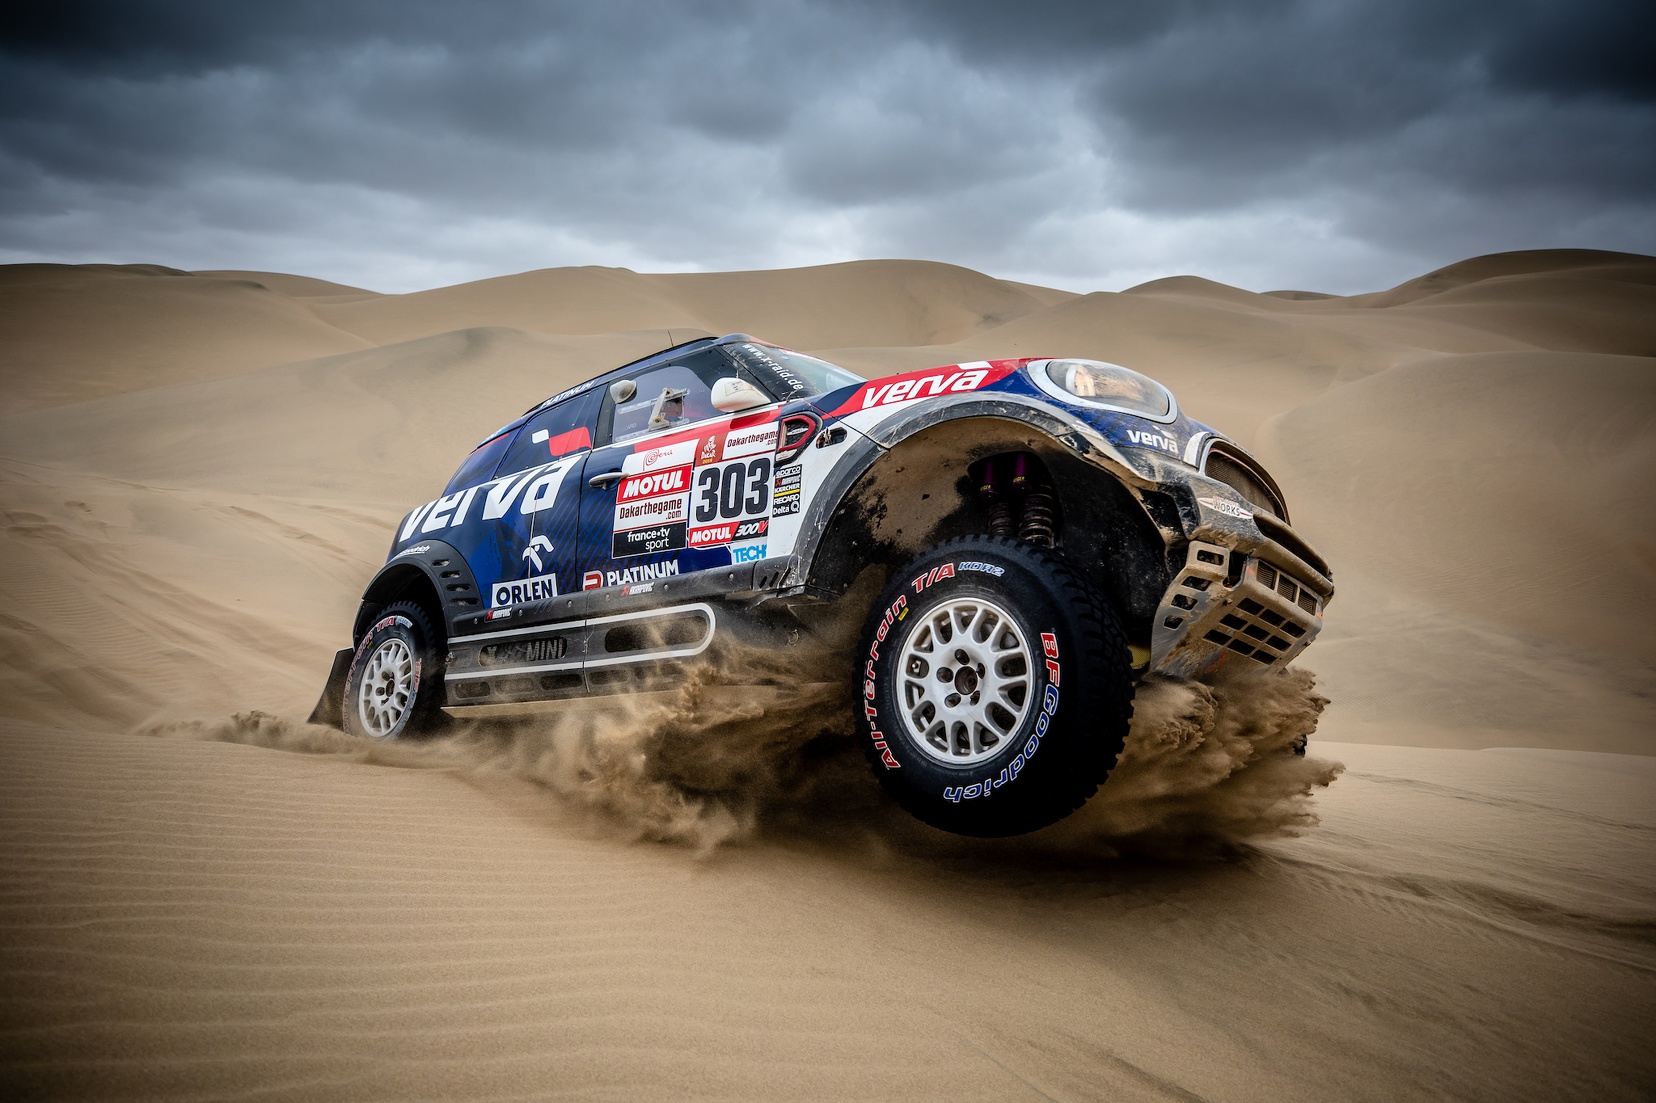 Mini takes top three spots on first day of 2020 Dakar